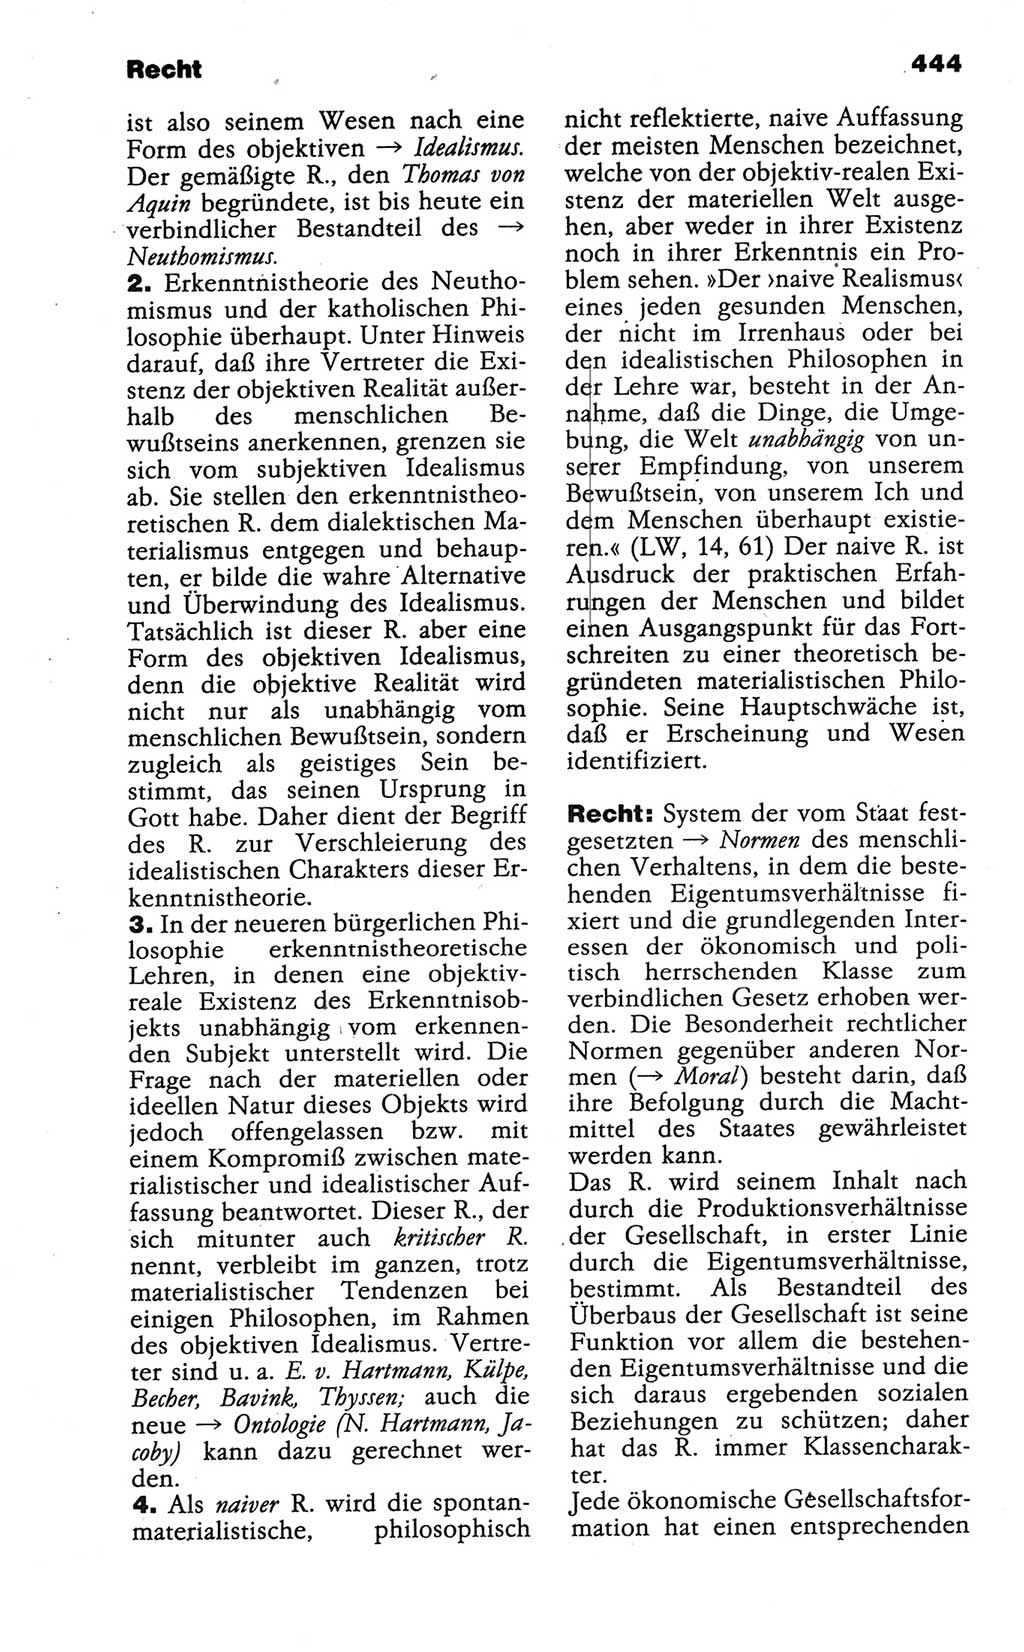 Wörterbuch der marxistisch-leninistischen Philosophie [Deutsche Demokratische Republik (DDR)] 1986, Seite 444 (Wb. ML Phil. DDR 1986, S. 444)